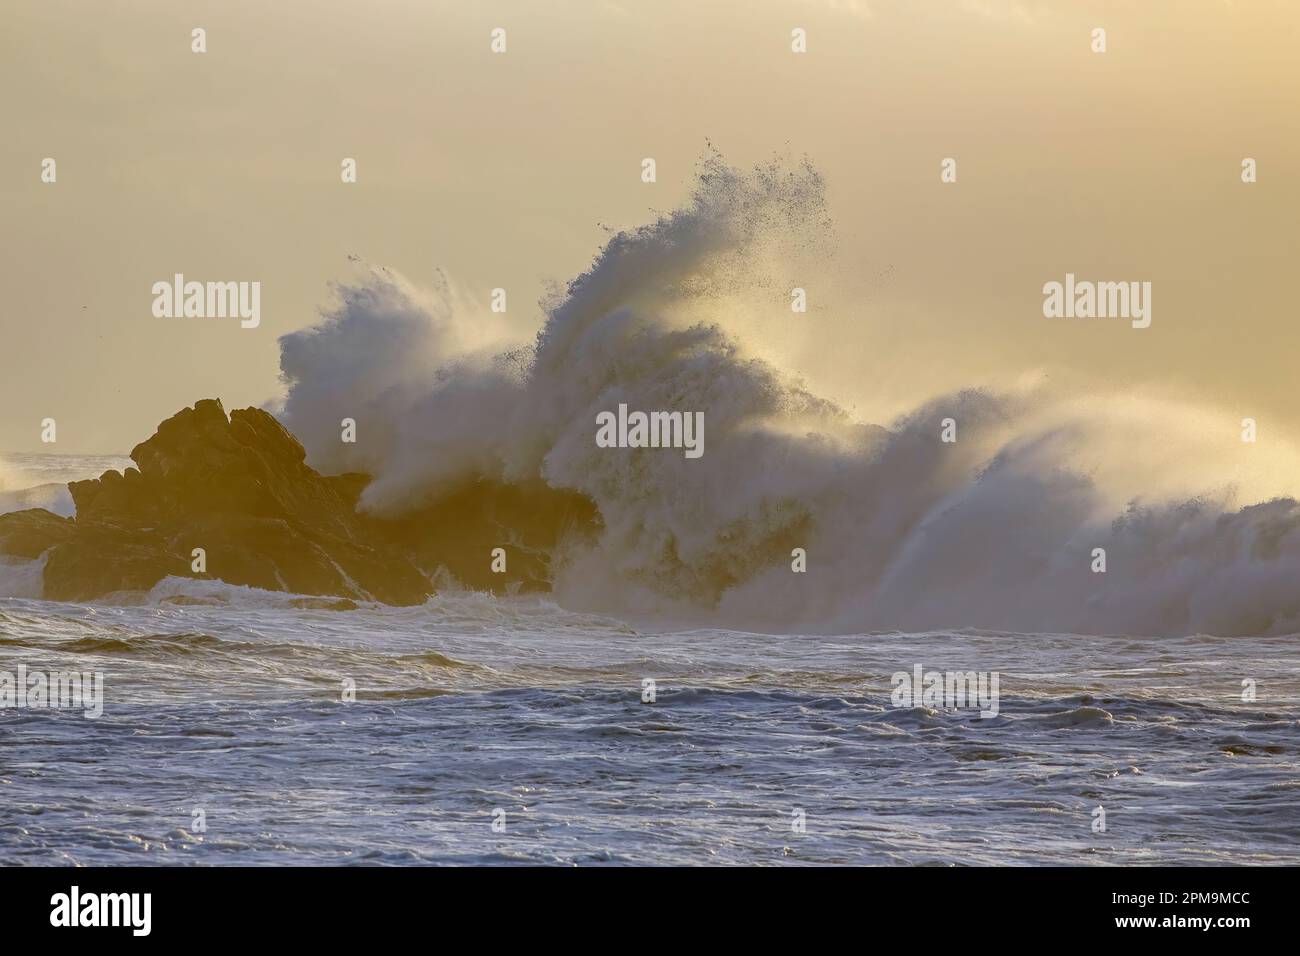 Sanfte, stürmische Wellen im Hintergrund bei Sonnenuntergang. Nördliche portugiesische felsige Küste. Stockfoto